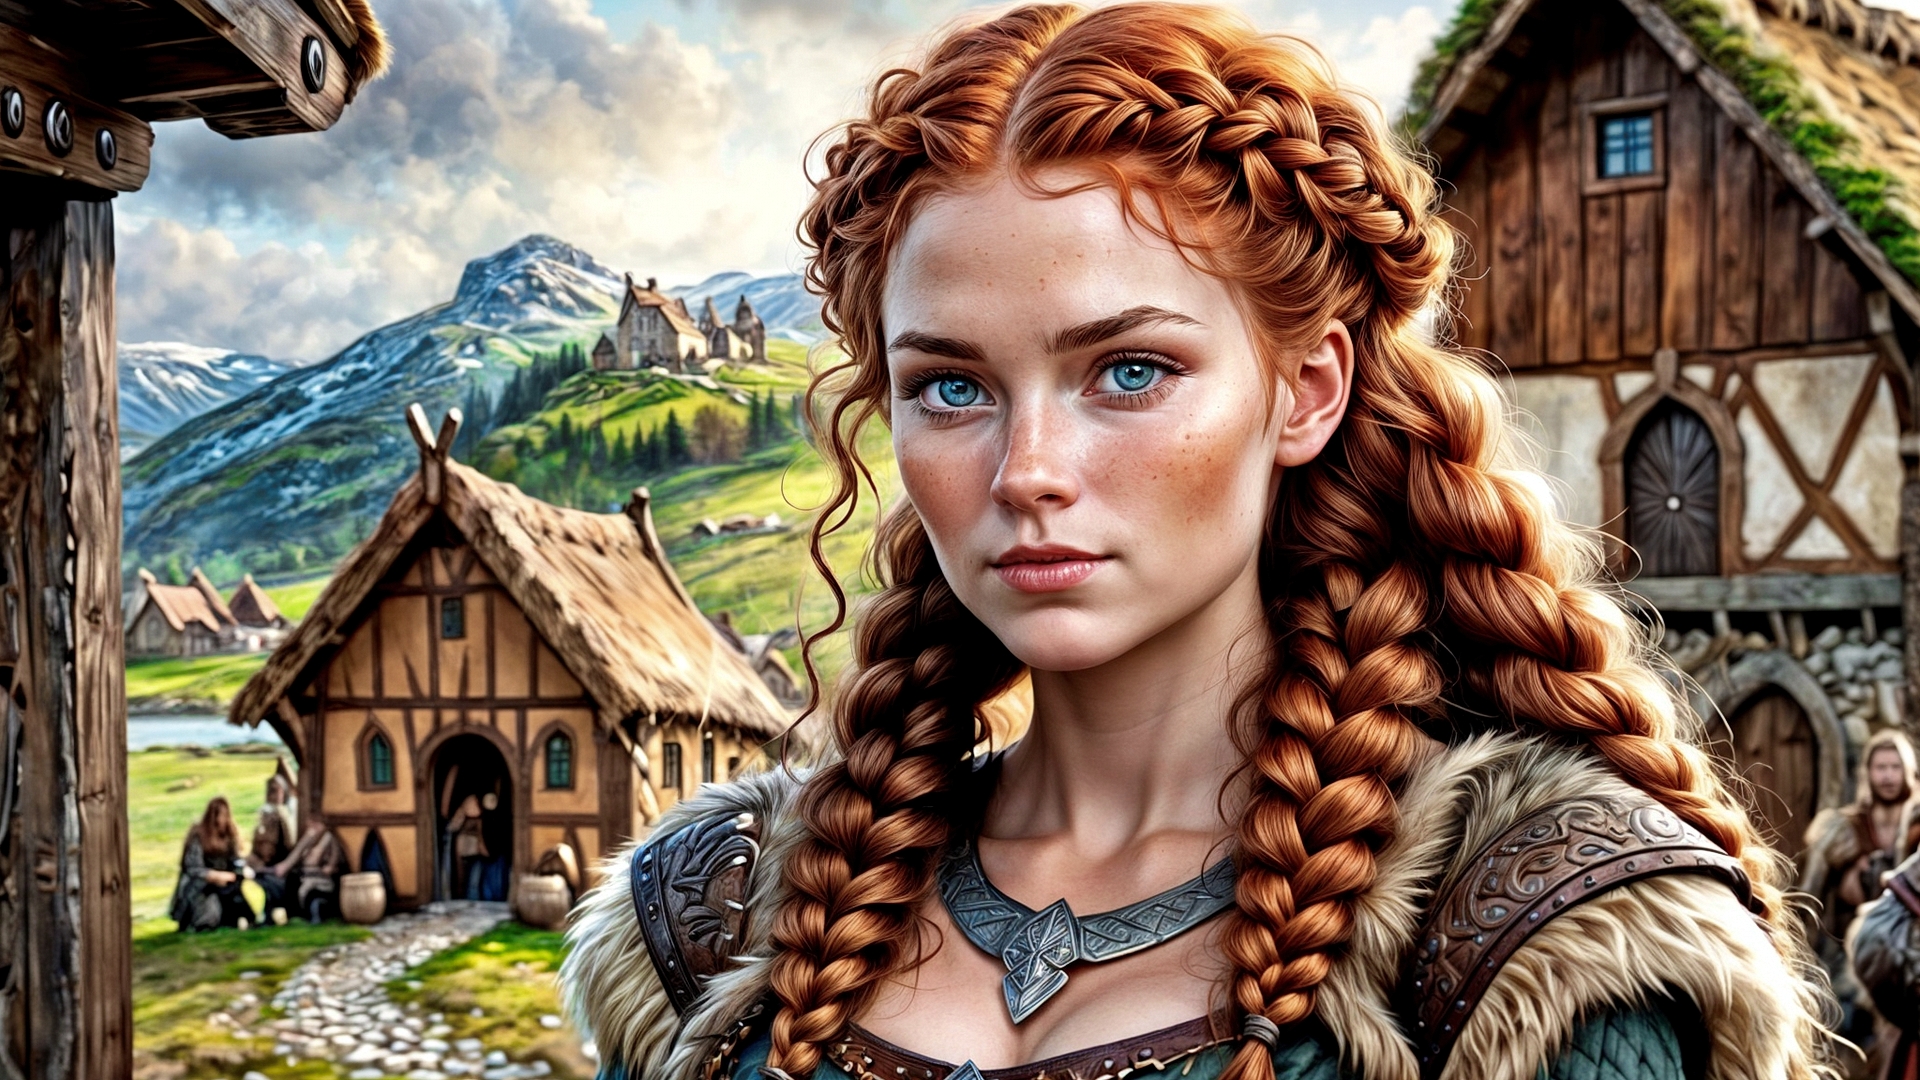 Бесплатное фото Портрет рыжеволосой девушки средних веков